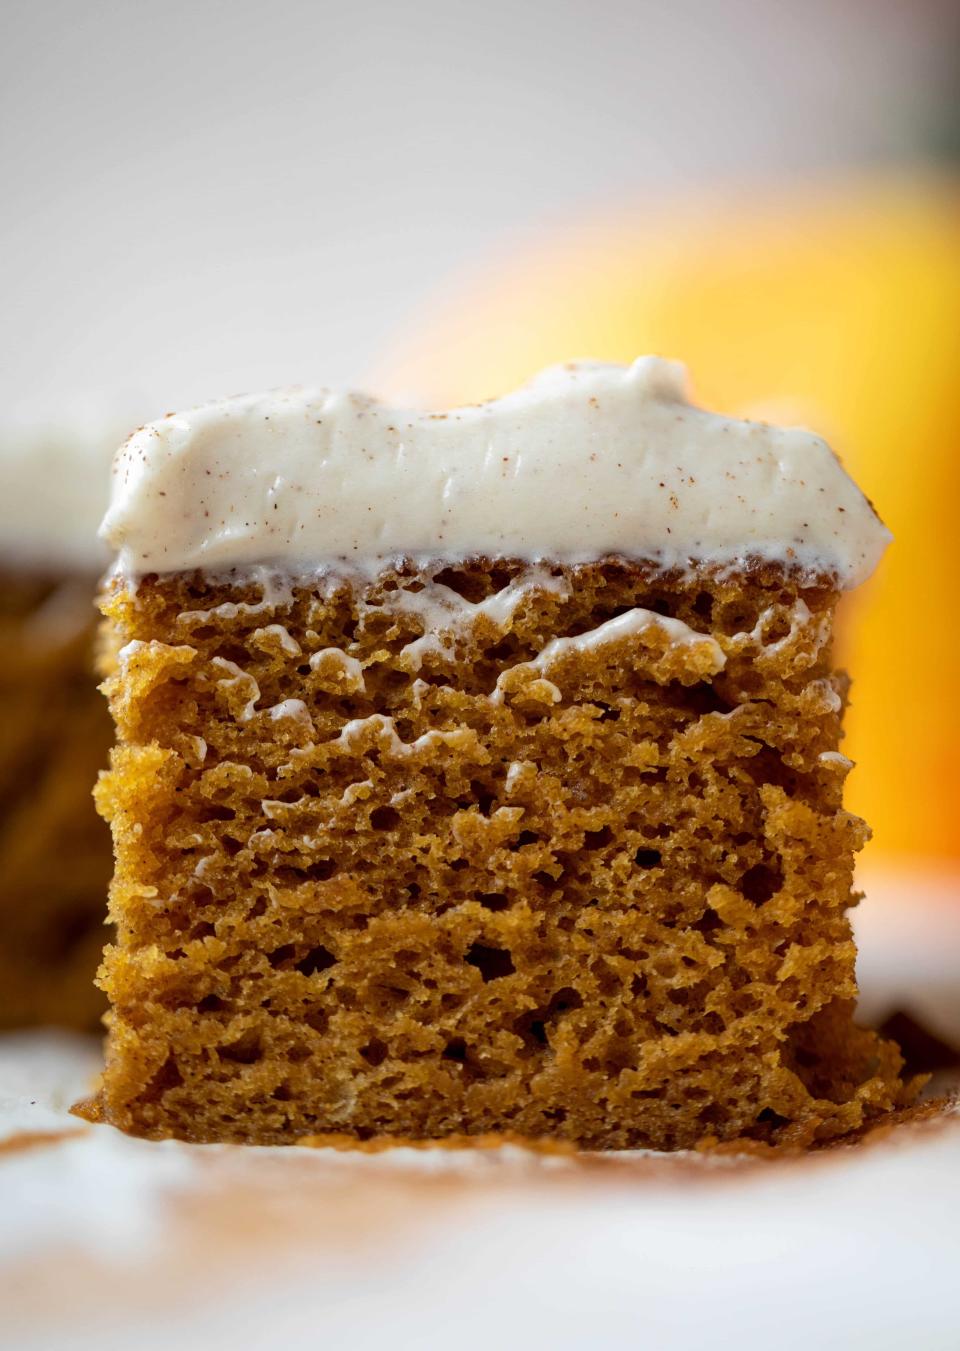 <strong><a href="https://www.howsweeteats.com/2019/10/pumpkin-sheet-cake/" target="_blank" rel="noopener noreferrer">Get the Pumpkin Dream Cake recipe from How Sweet Eats</a> &nbsp;</strong>